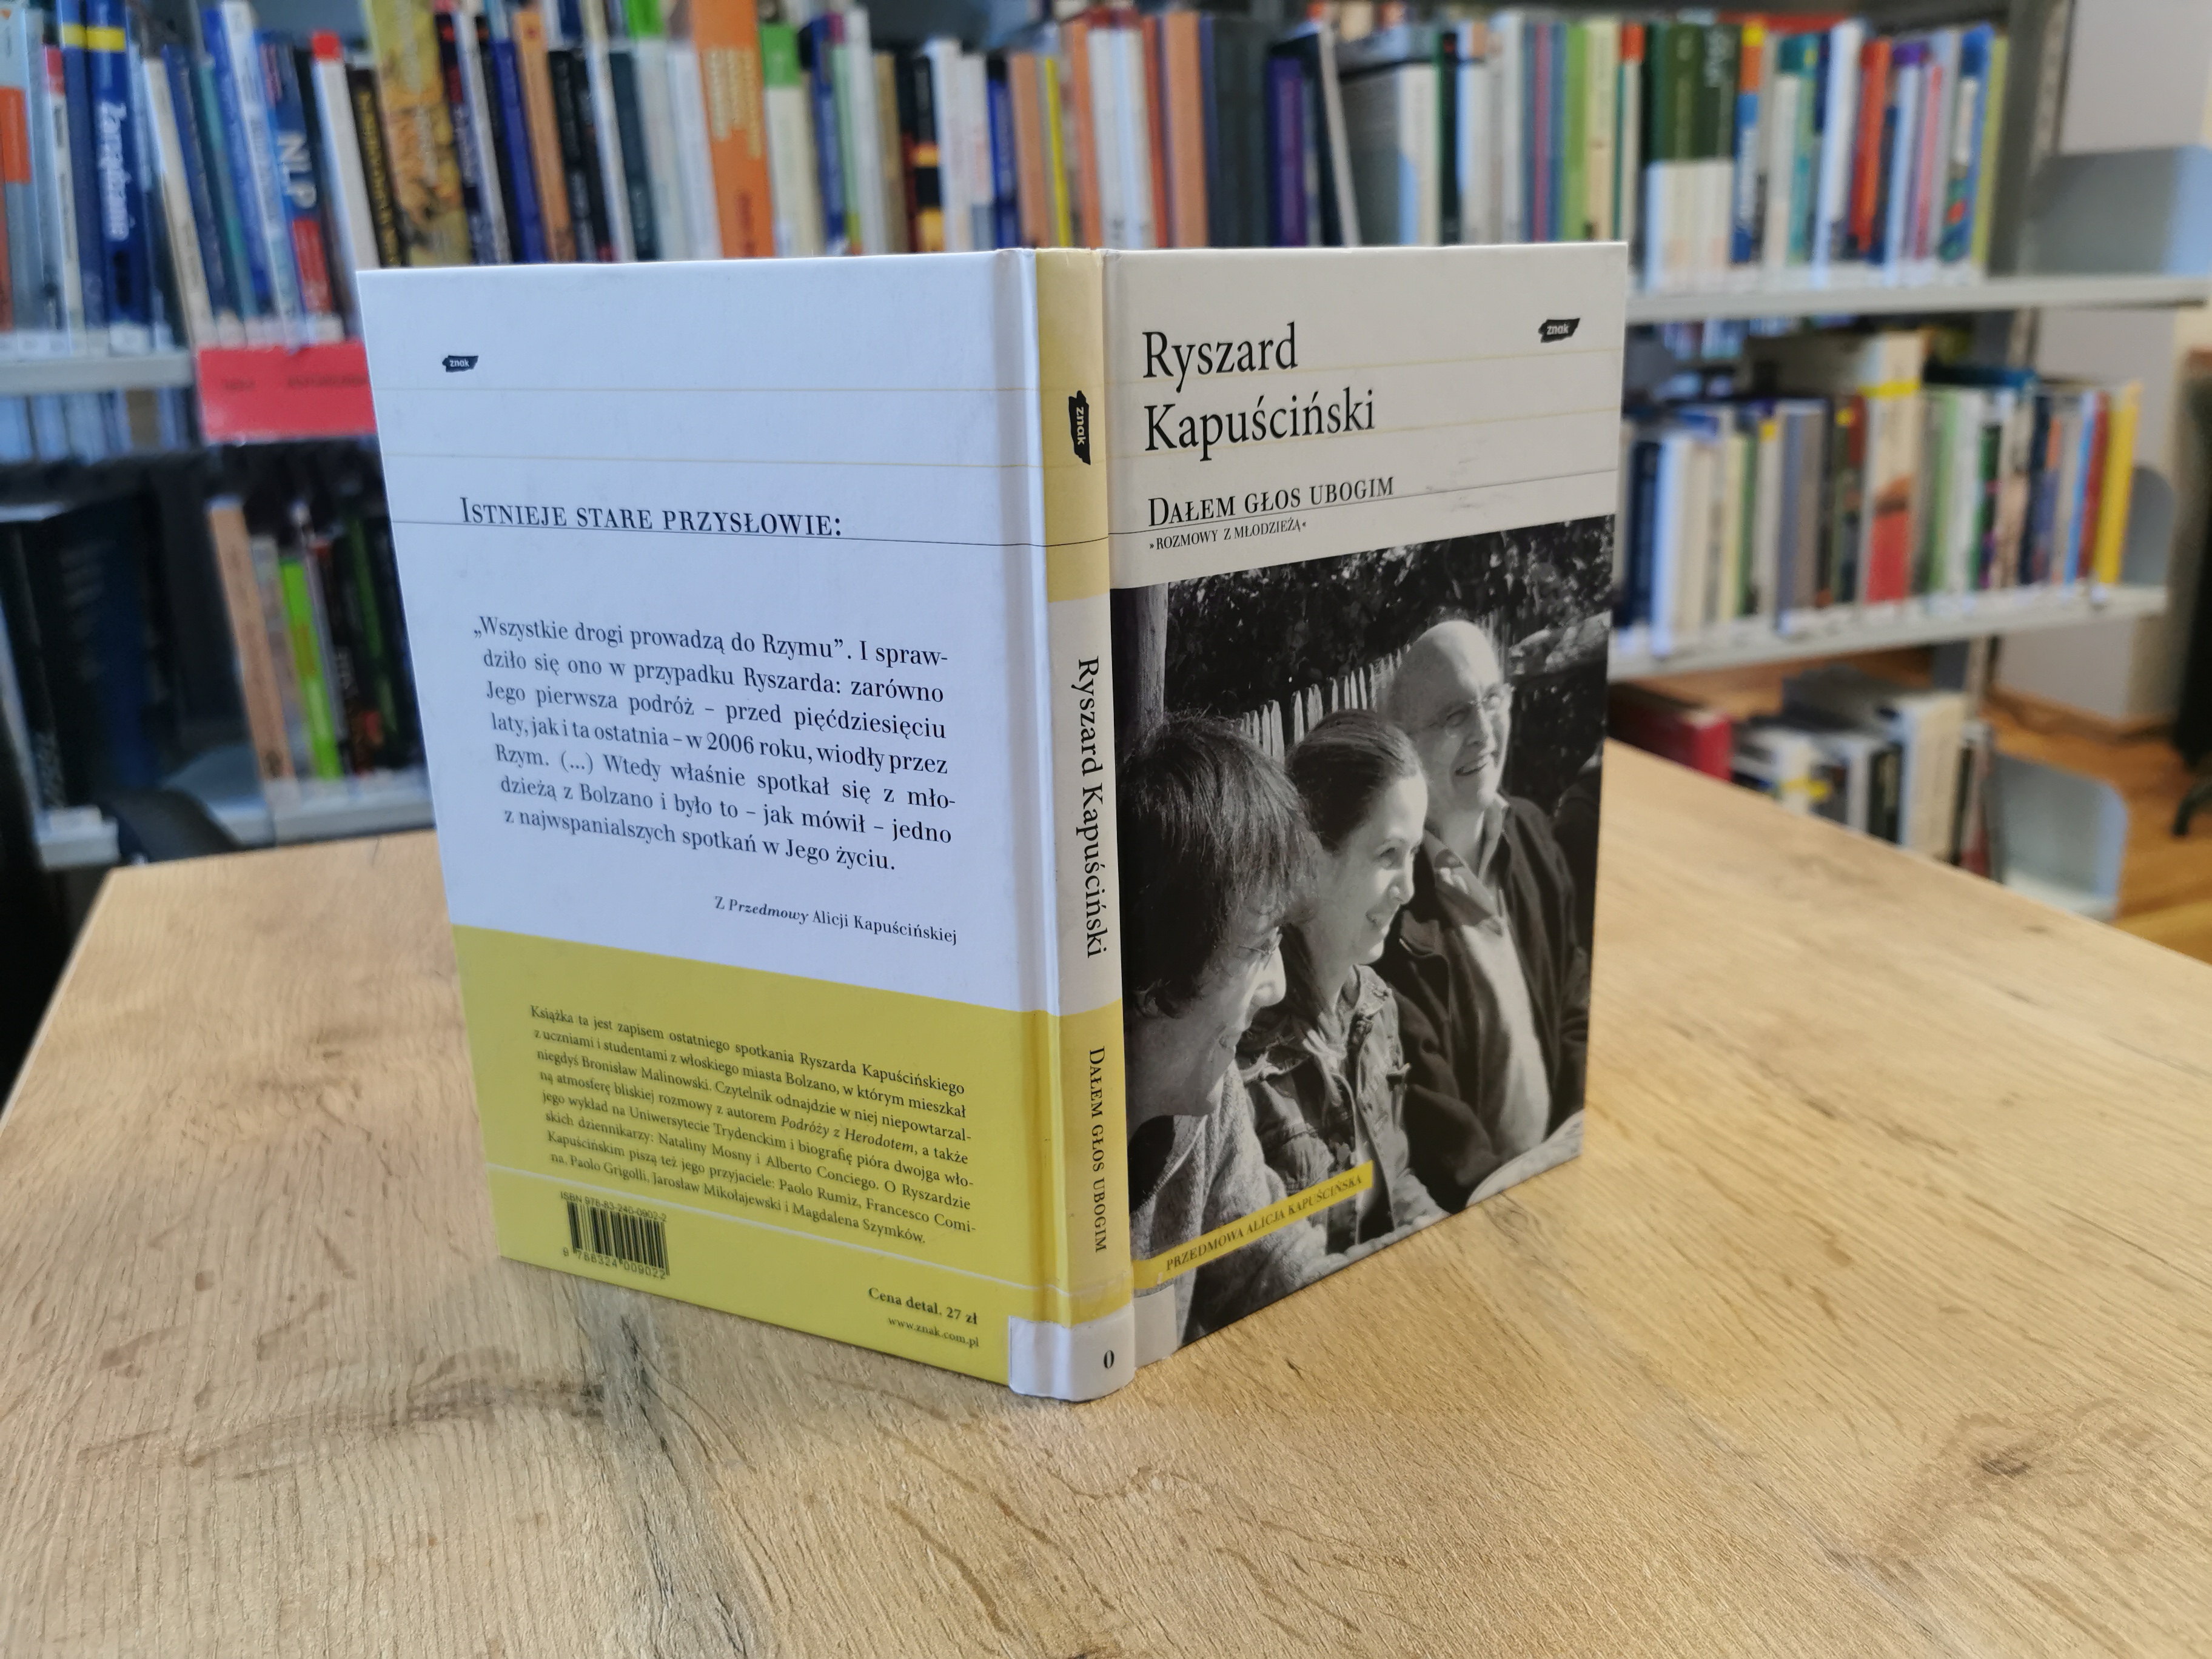 Okładka książki "Dałem głos ubogich" Ryszarda Kapuścińskiego